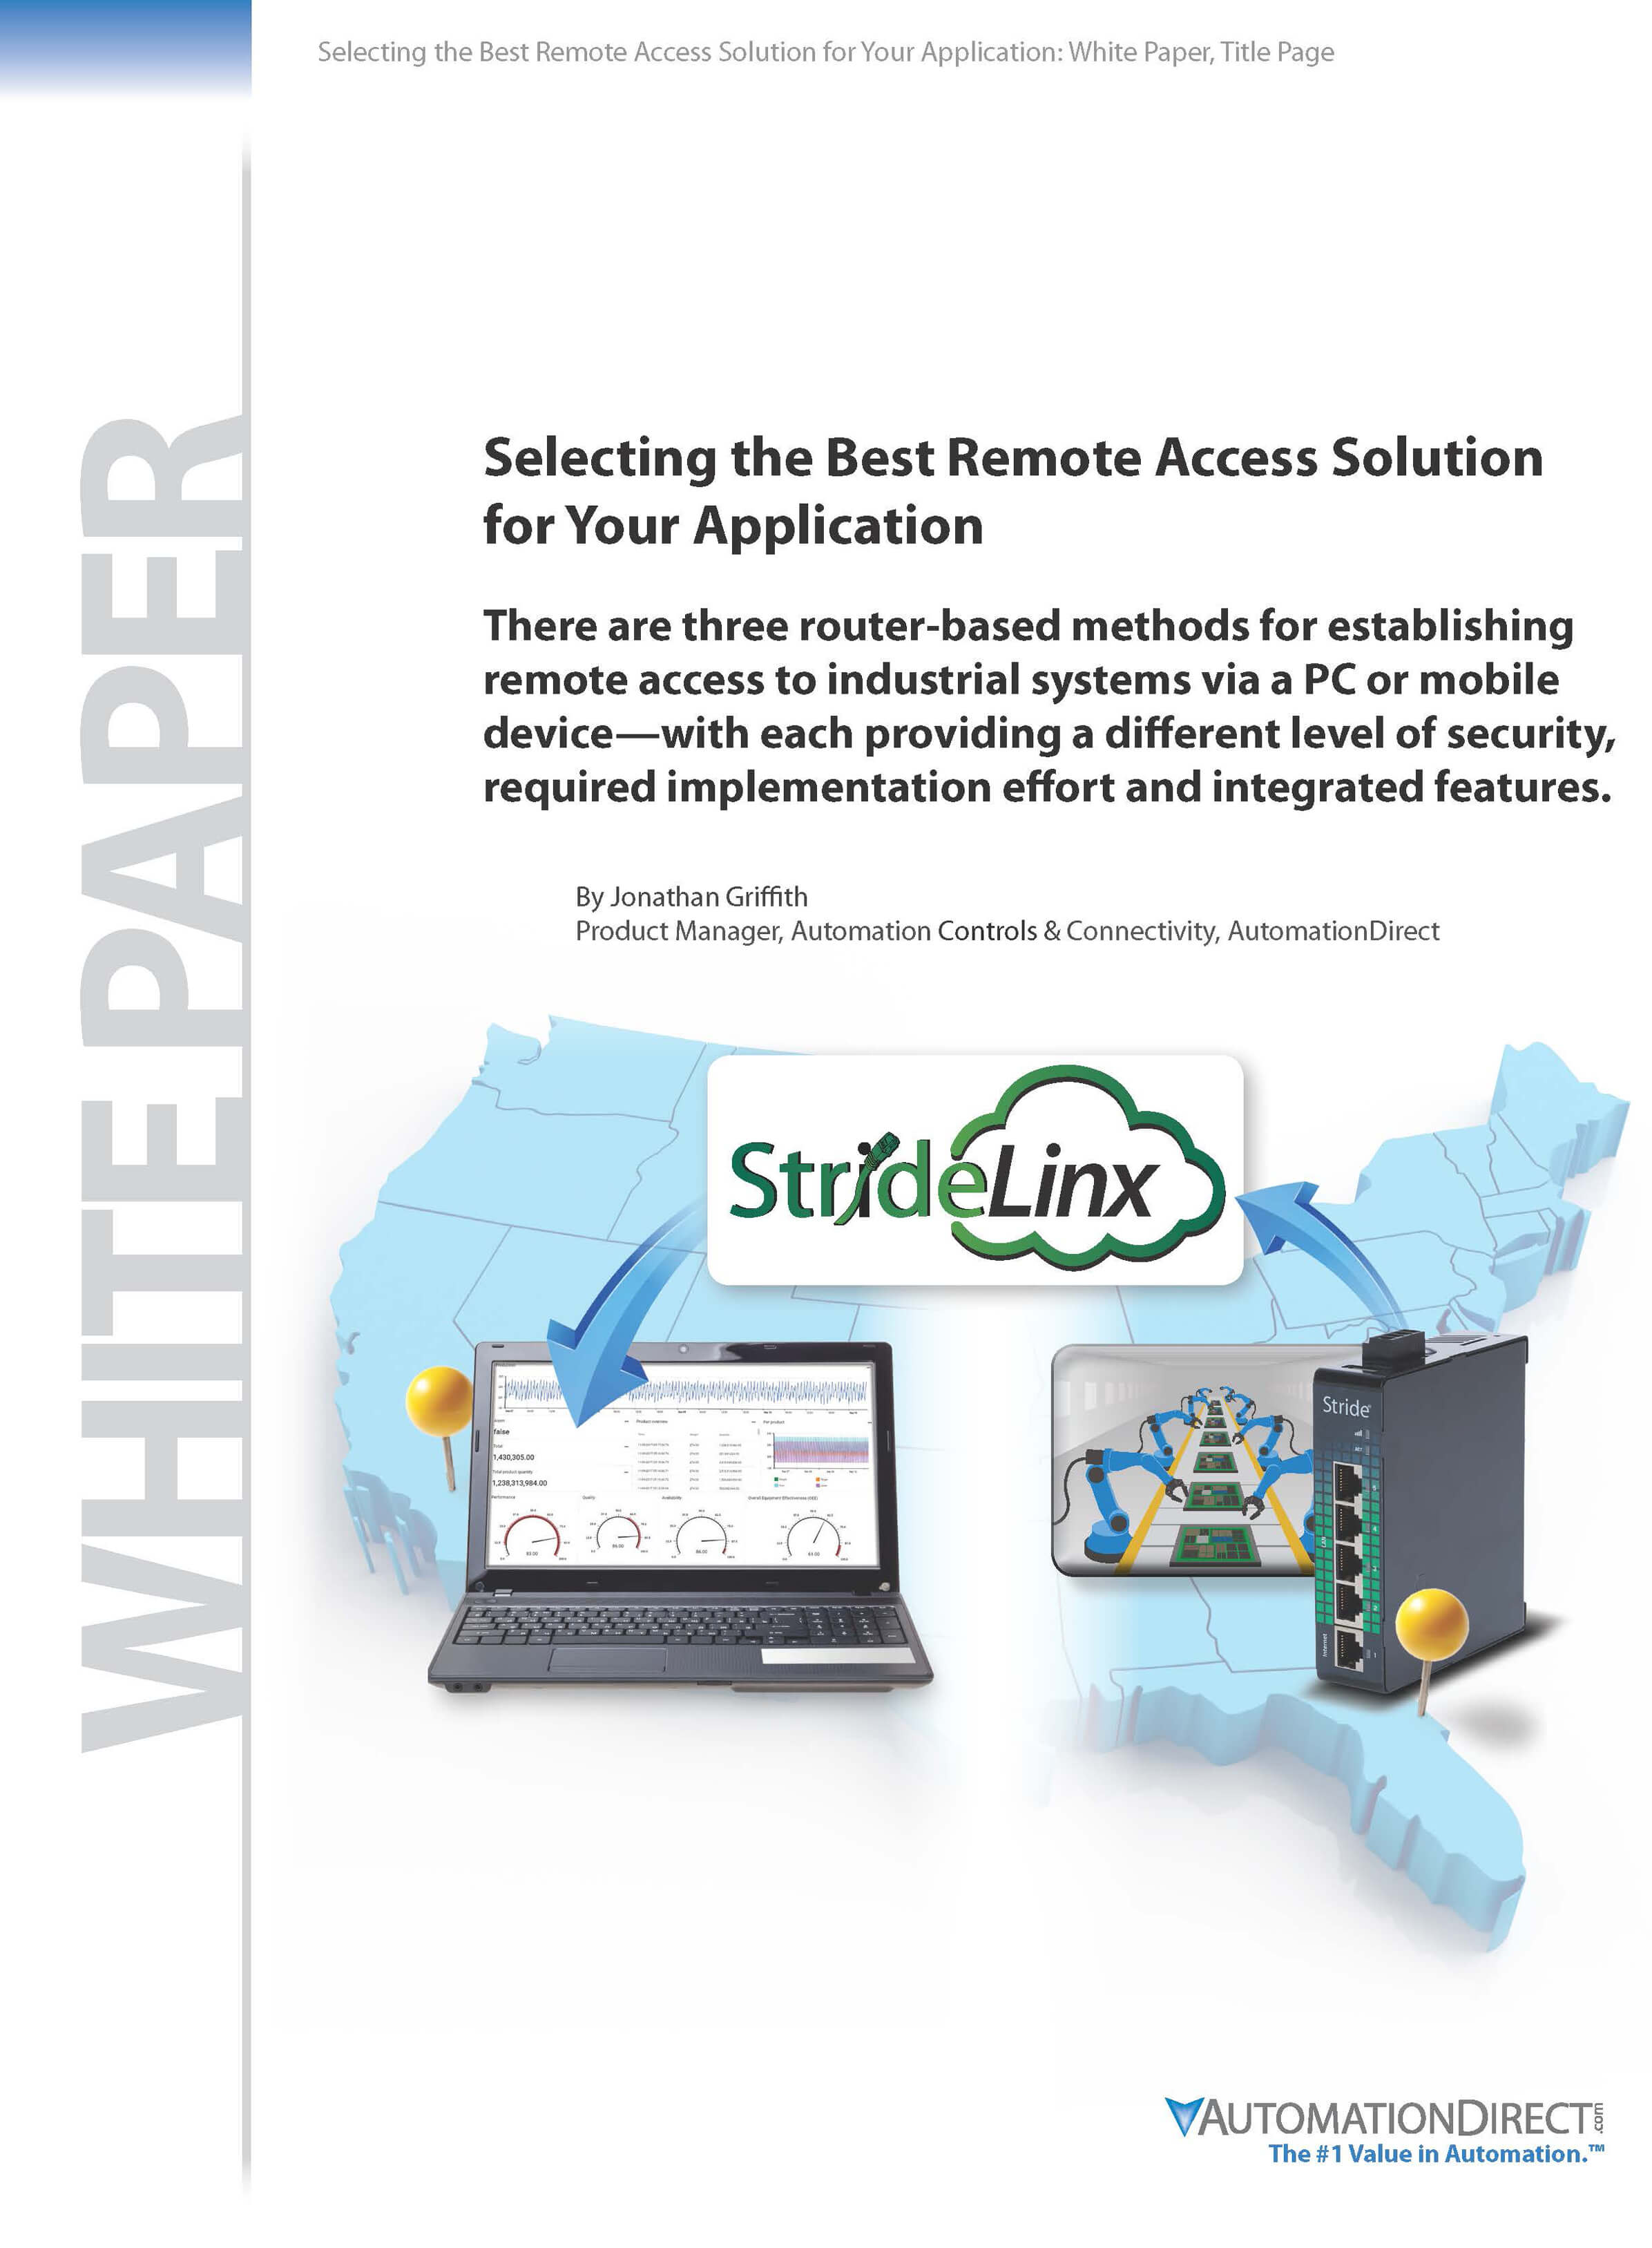 Remote Access |White Paper